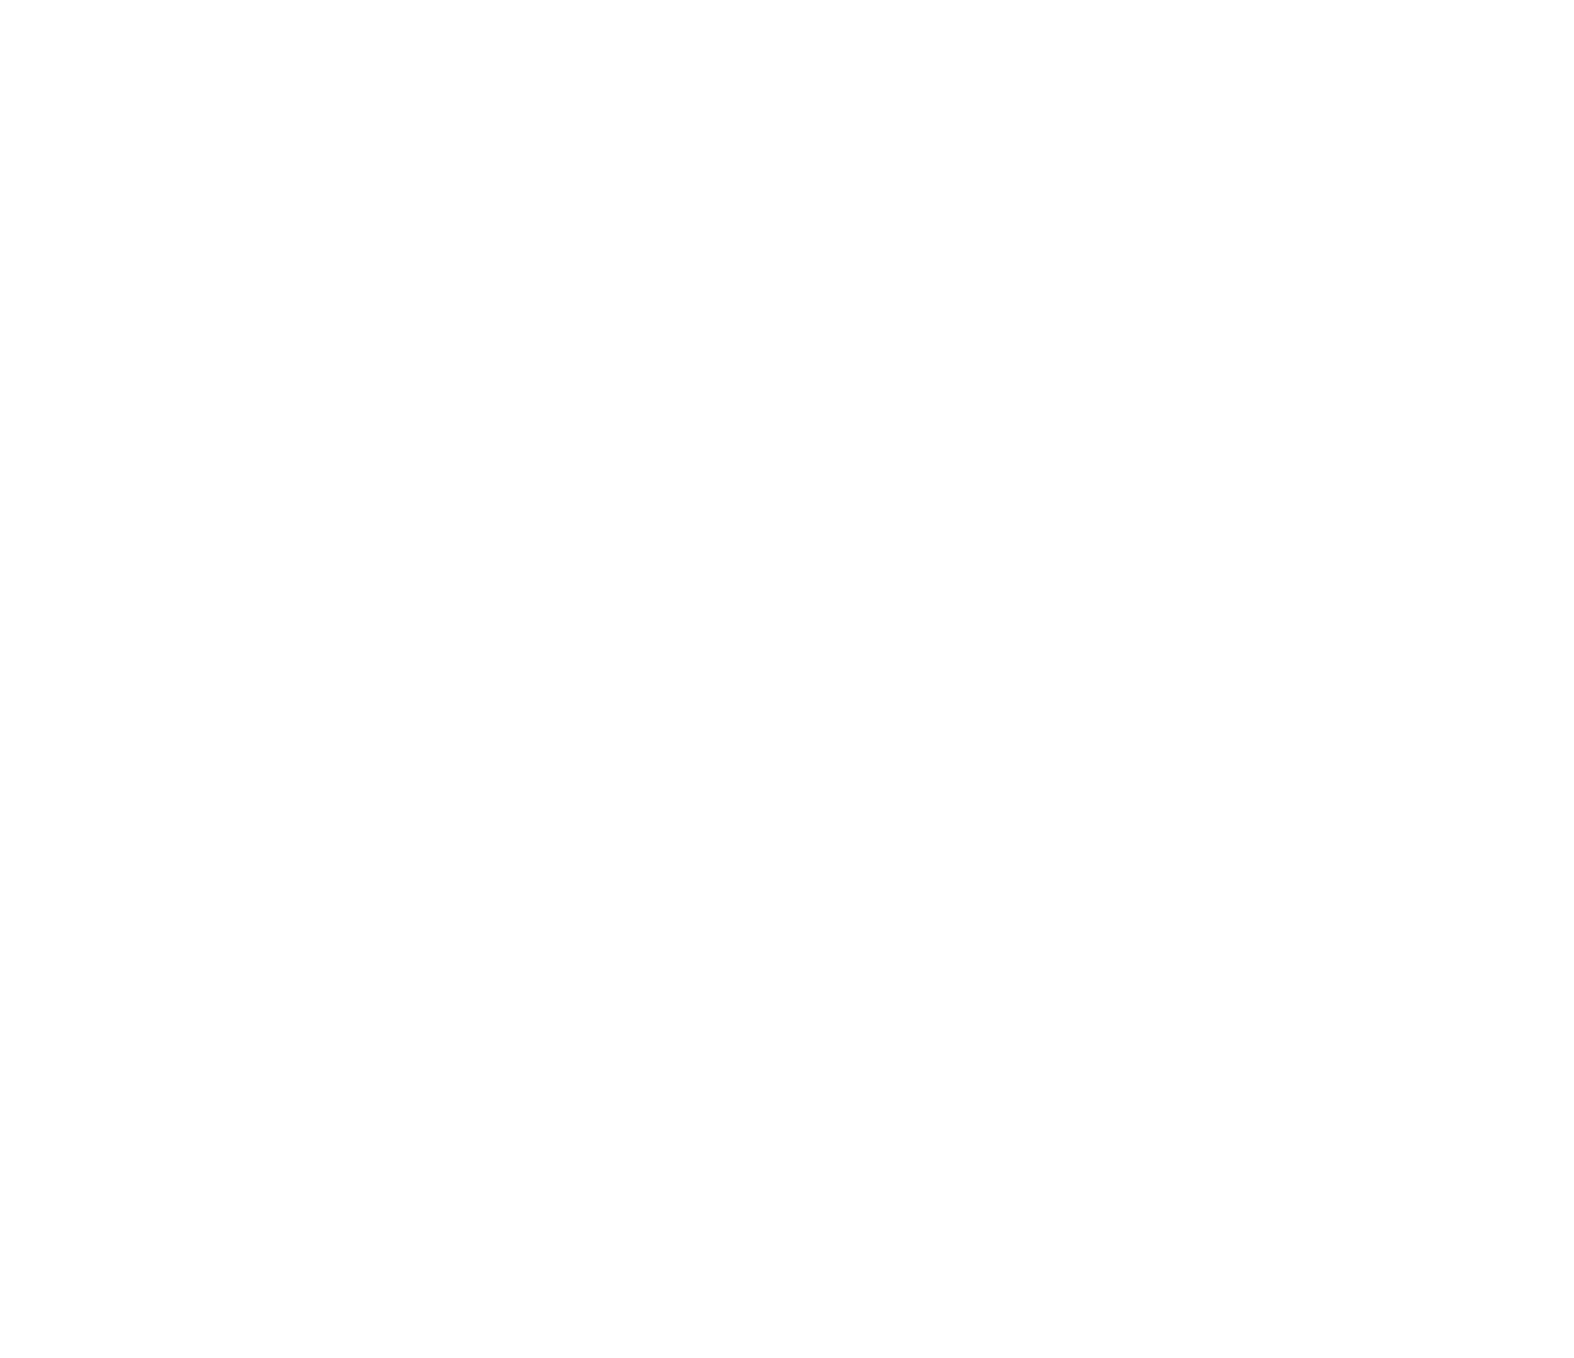 Fluidra logo pour fonds sombres (PNG transparent)